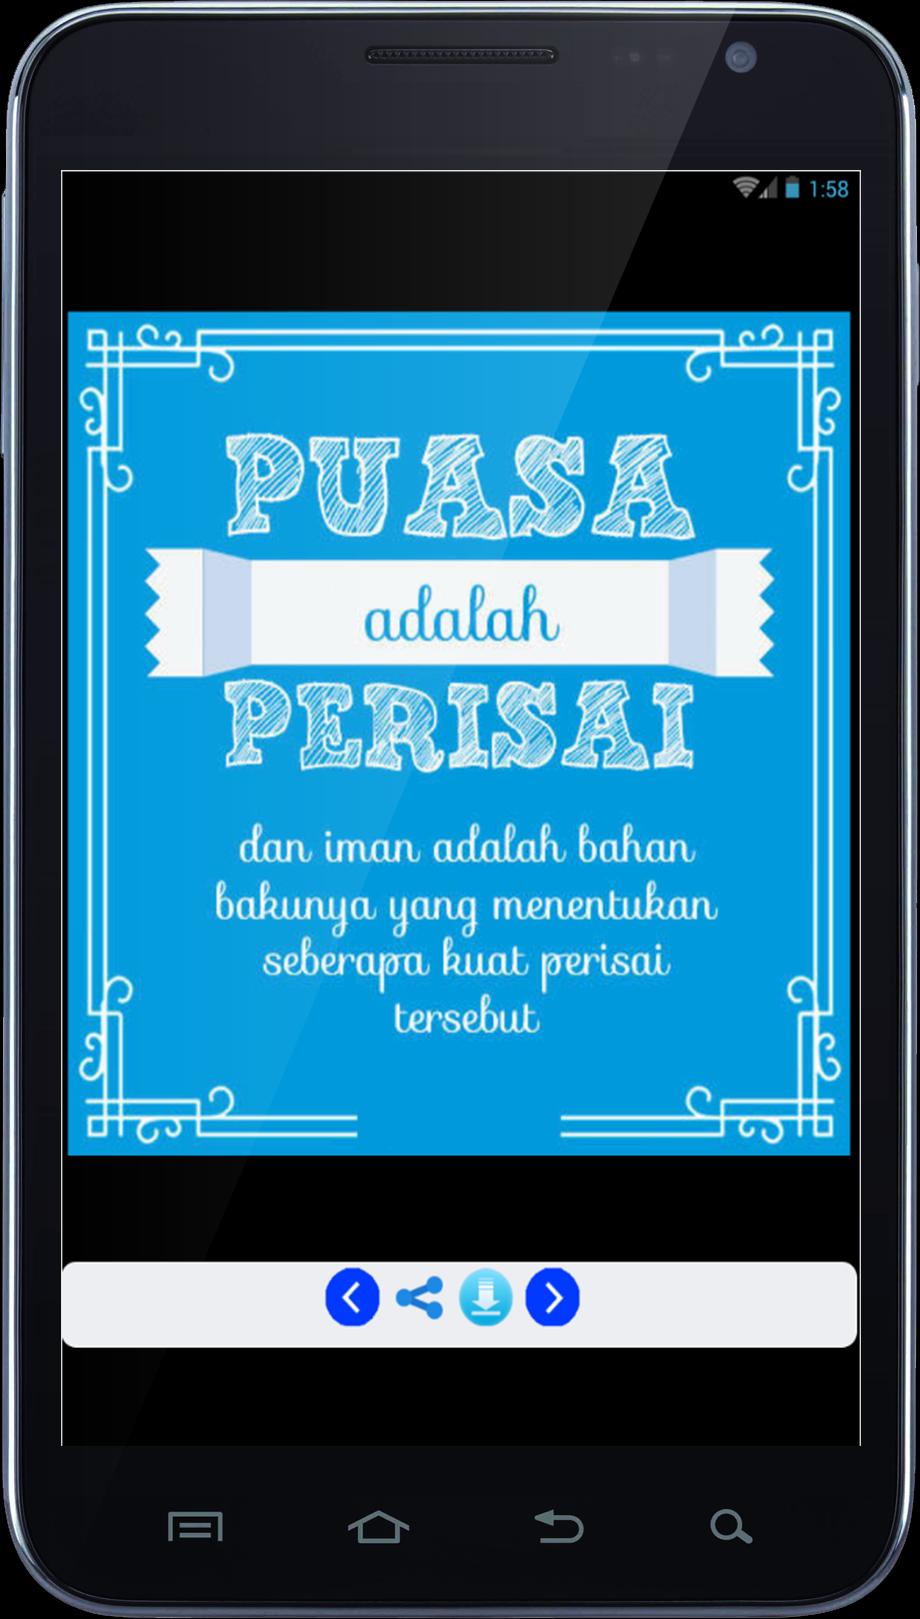 Dp Gambar Lucu Puasa Ramadhan For Android Apk Download